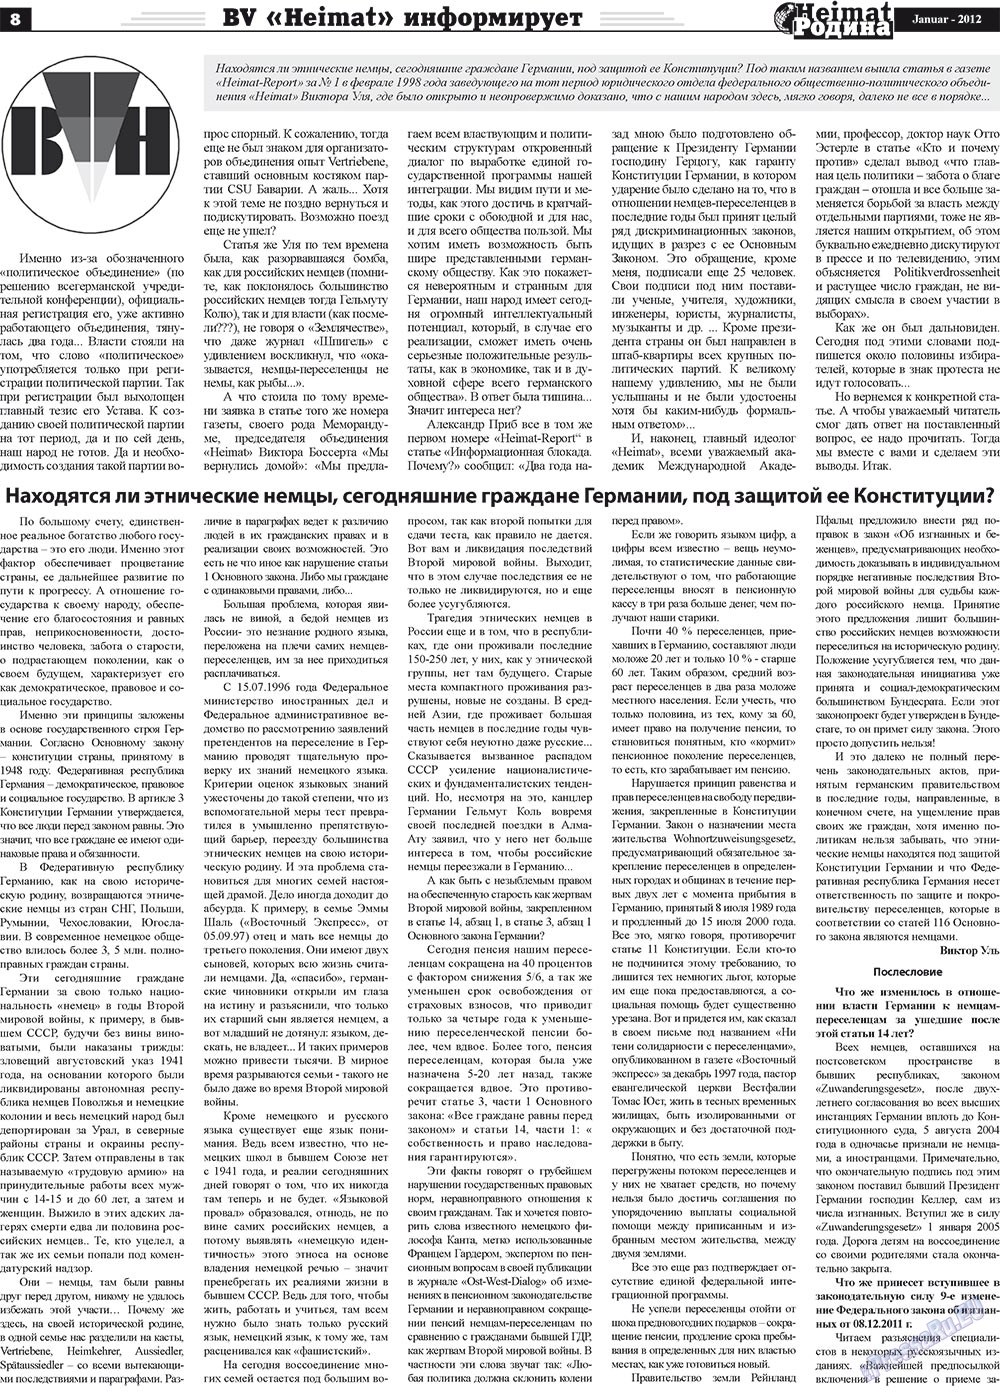 Heimat-Родина (Zeitung). 2012 Jahr, Ausgabe 1, Seite 8